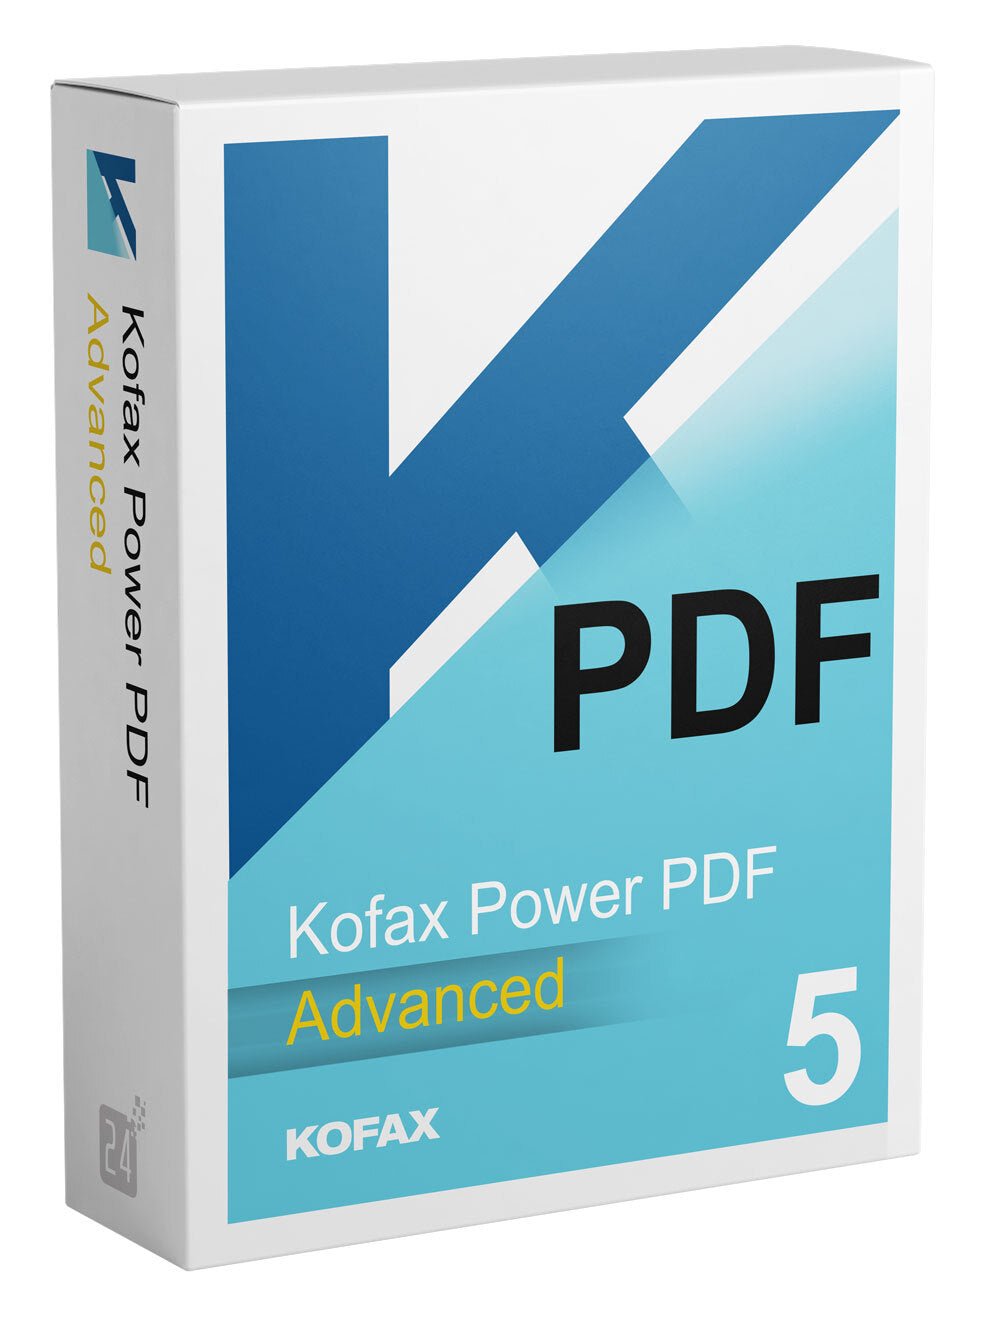 Kofax (Nuance) Power PDF 5 Advanced for Windows (PPD-PER-0399-001U) - Win-Pro Consultancy Pte Ltd